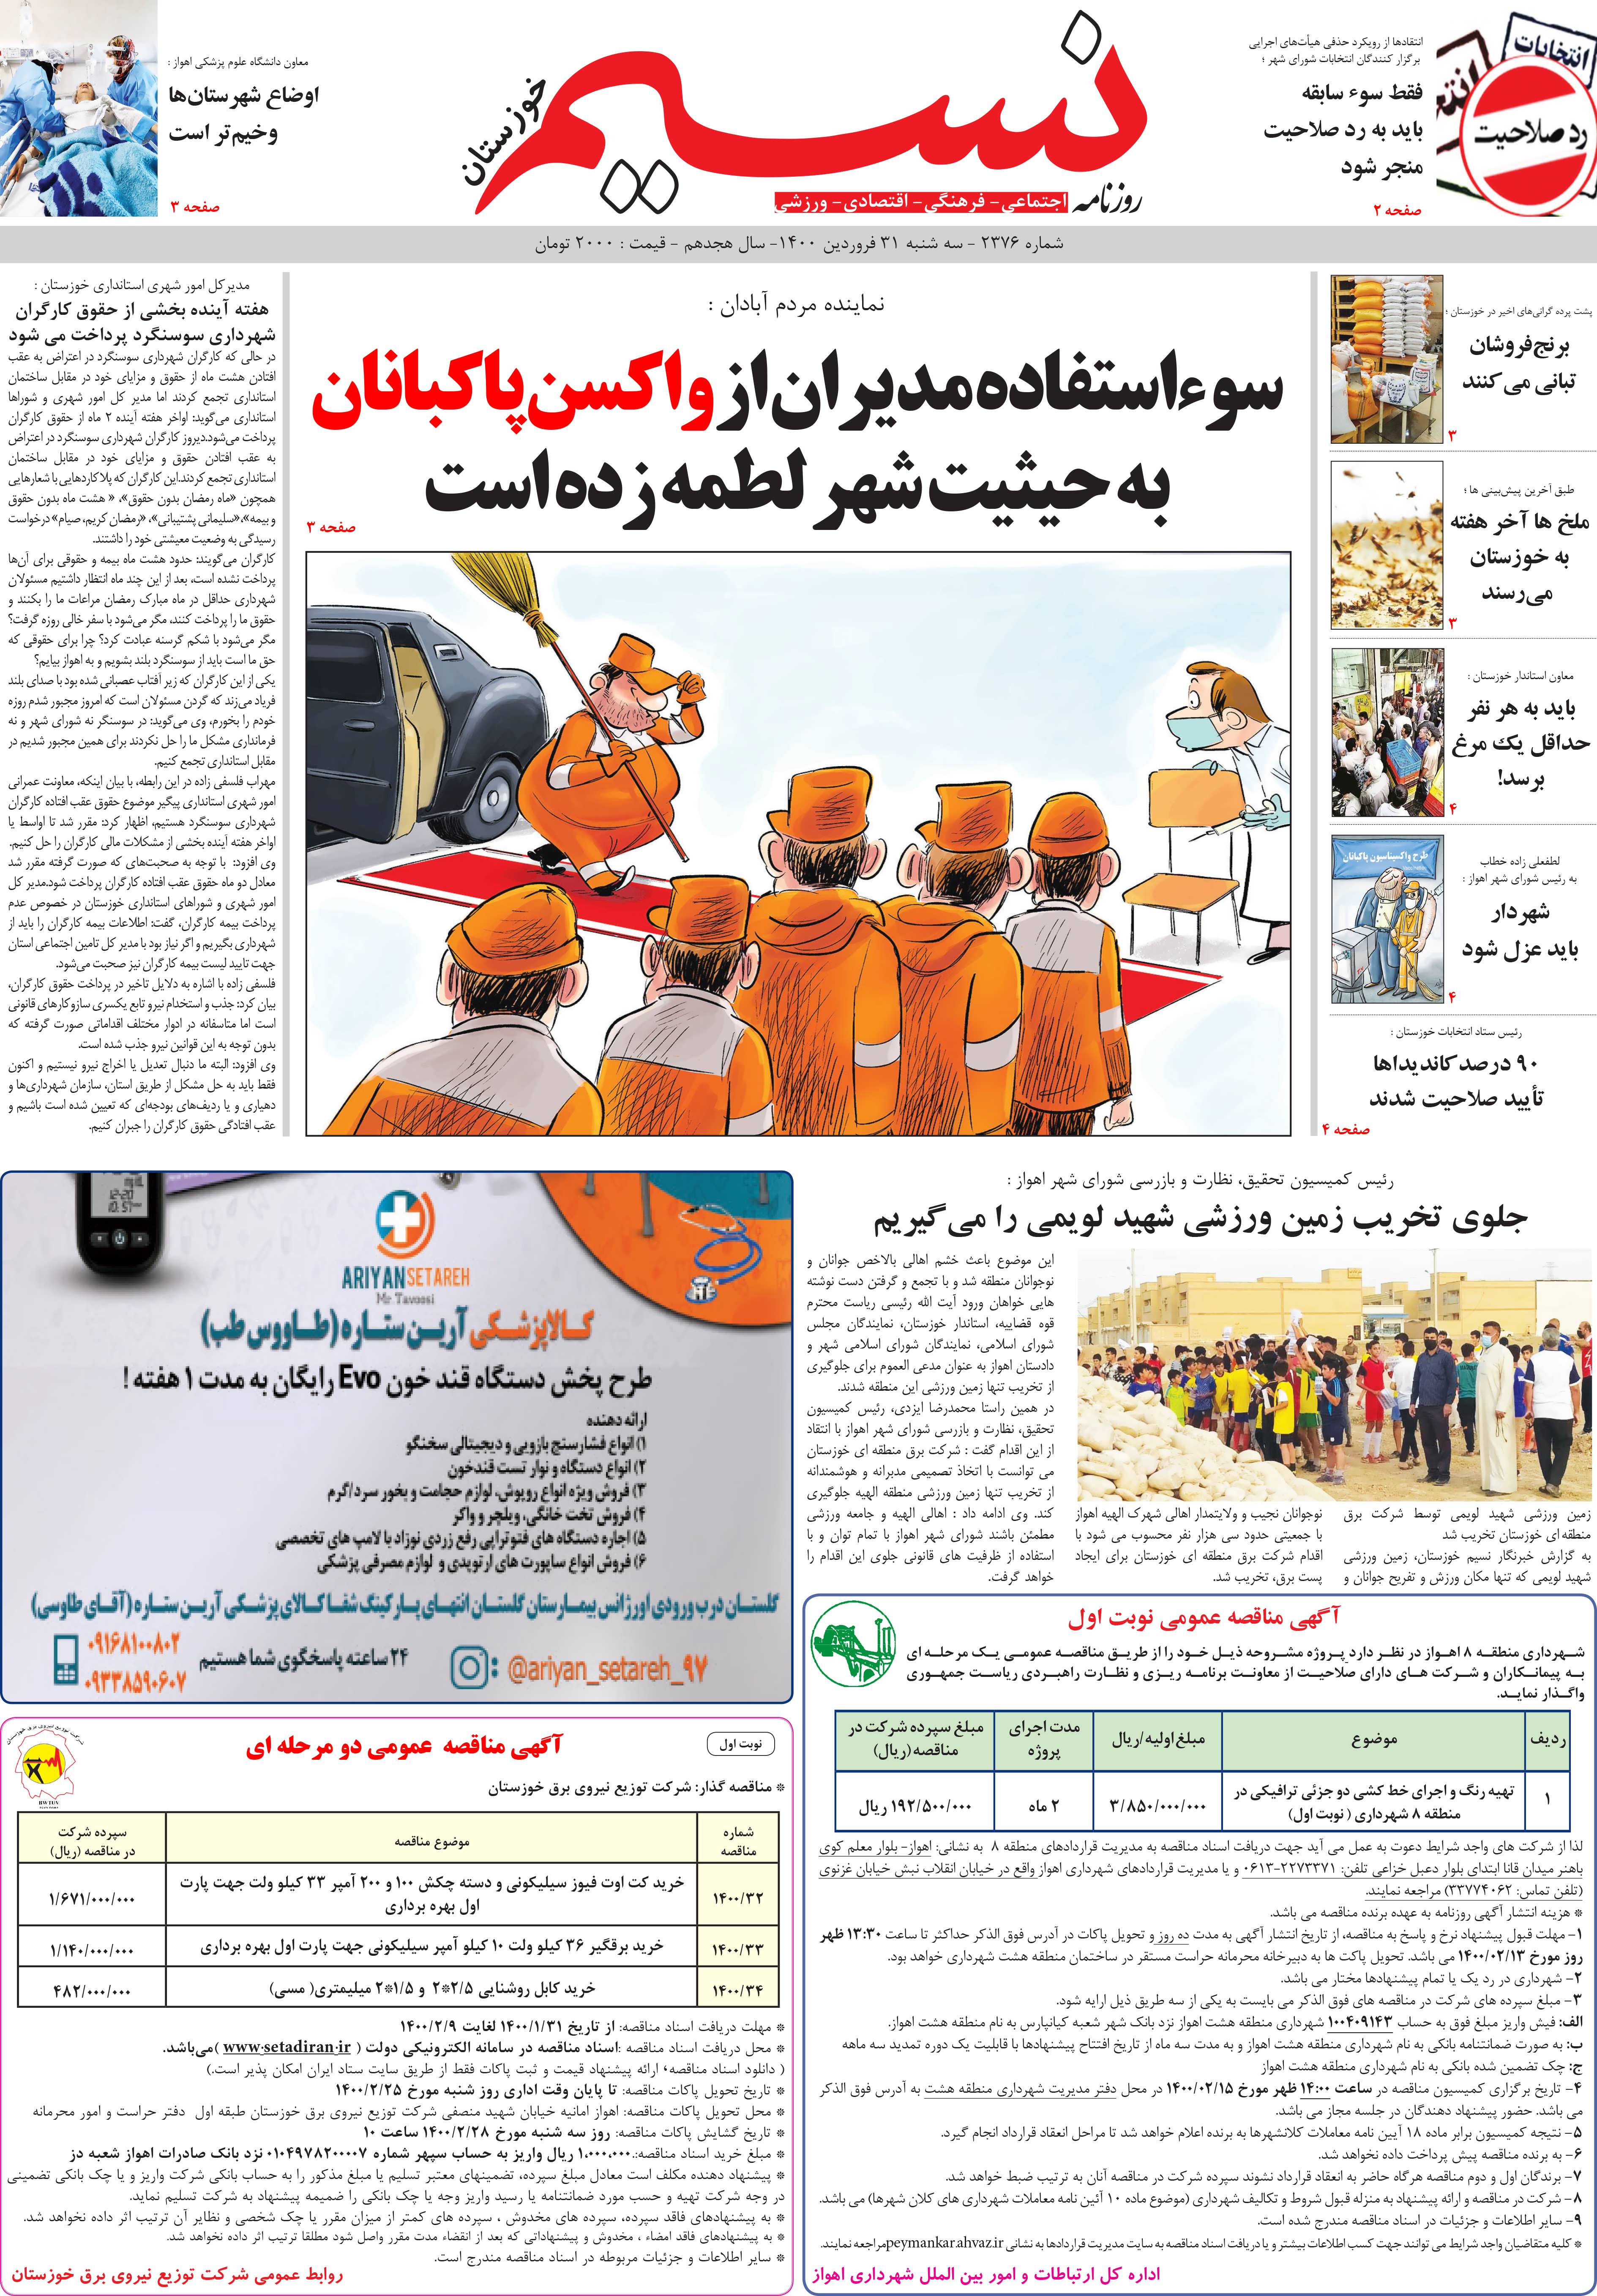 صفحه اصلی روزنامه نسیم شماره 2376 